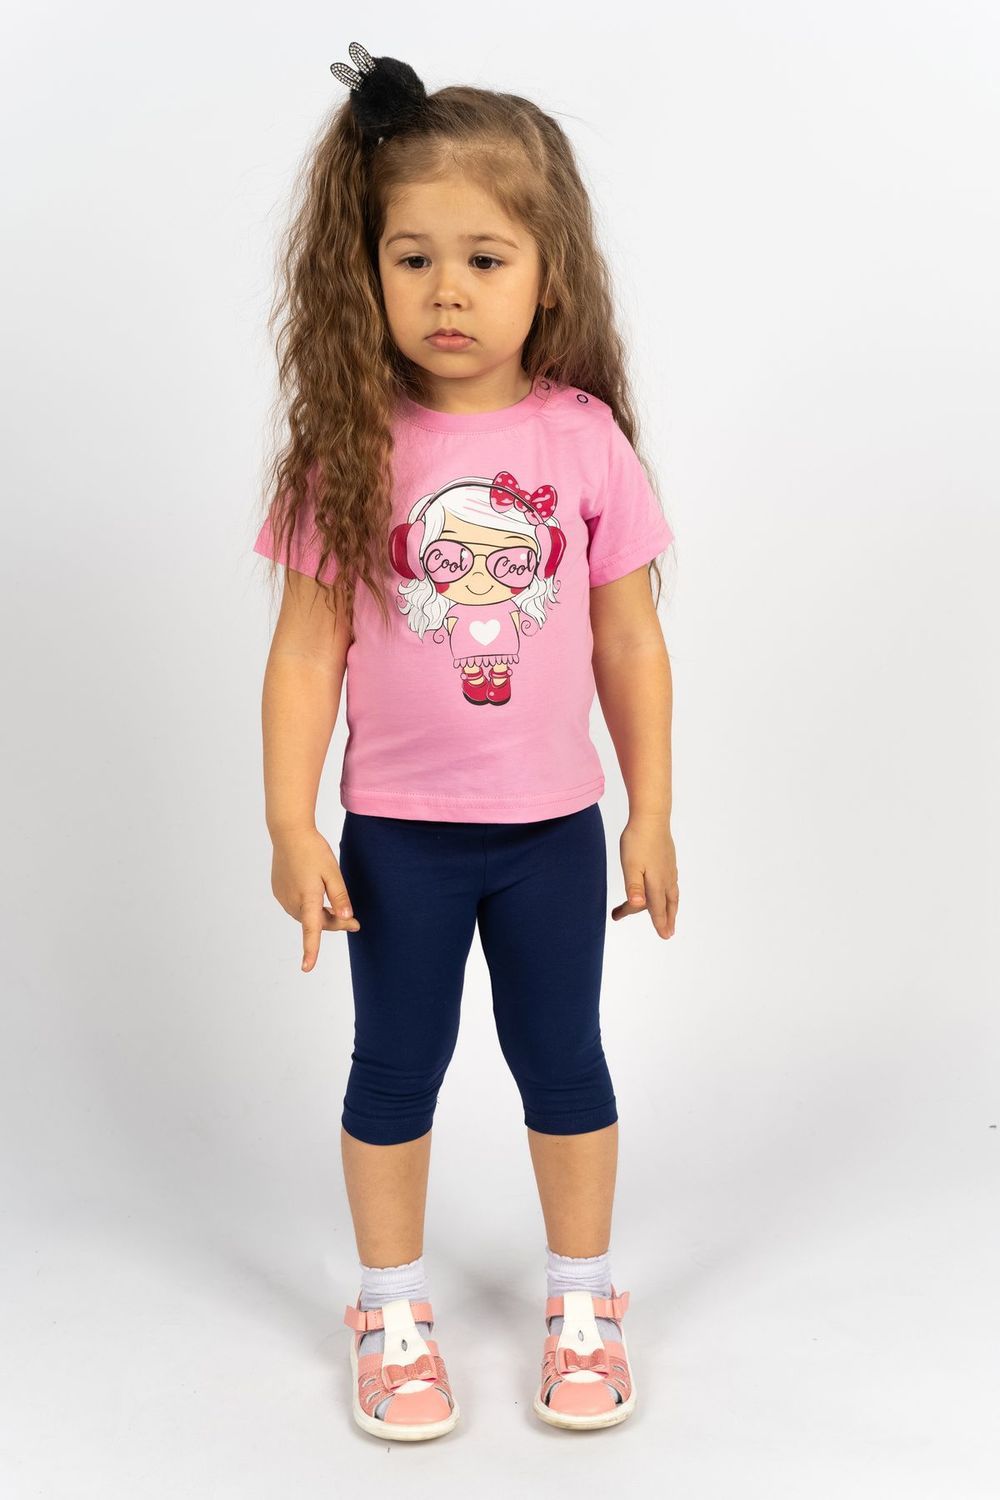 Комплект для девочки 4198 (футболка-бриджи) - с.розовый/синий